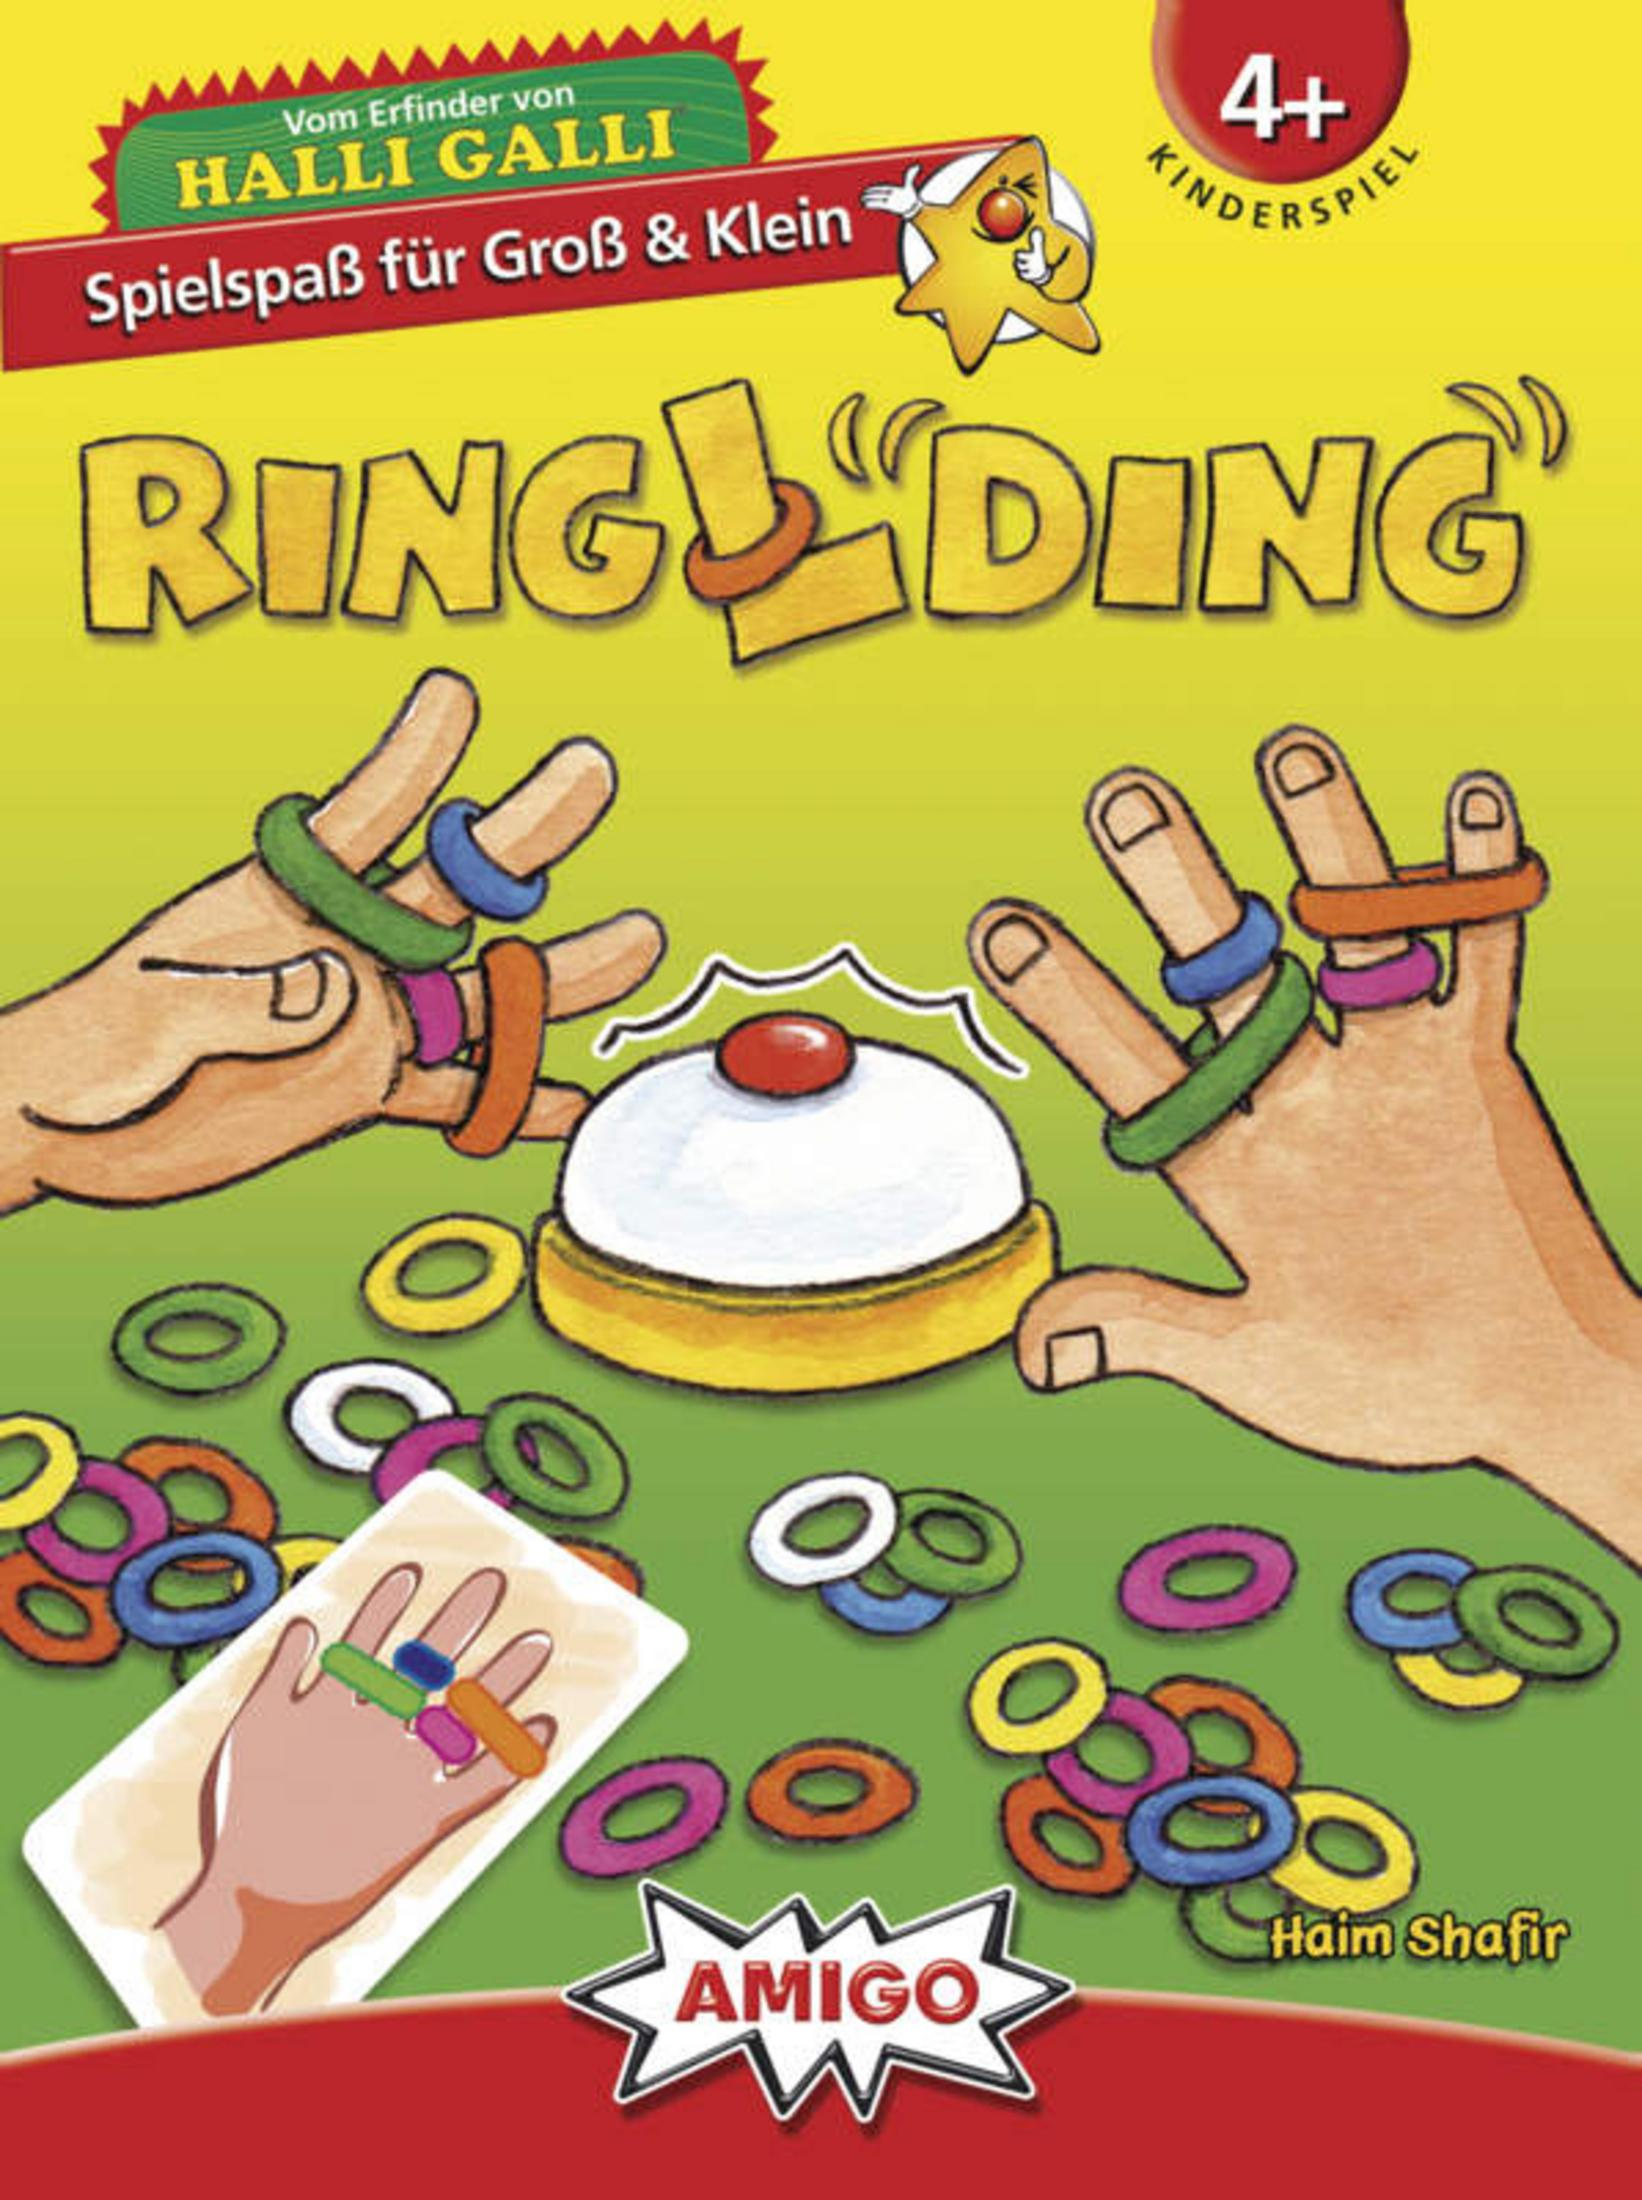 RINGLDING Kinderspiel 01735 AMIGO